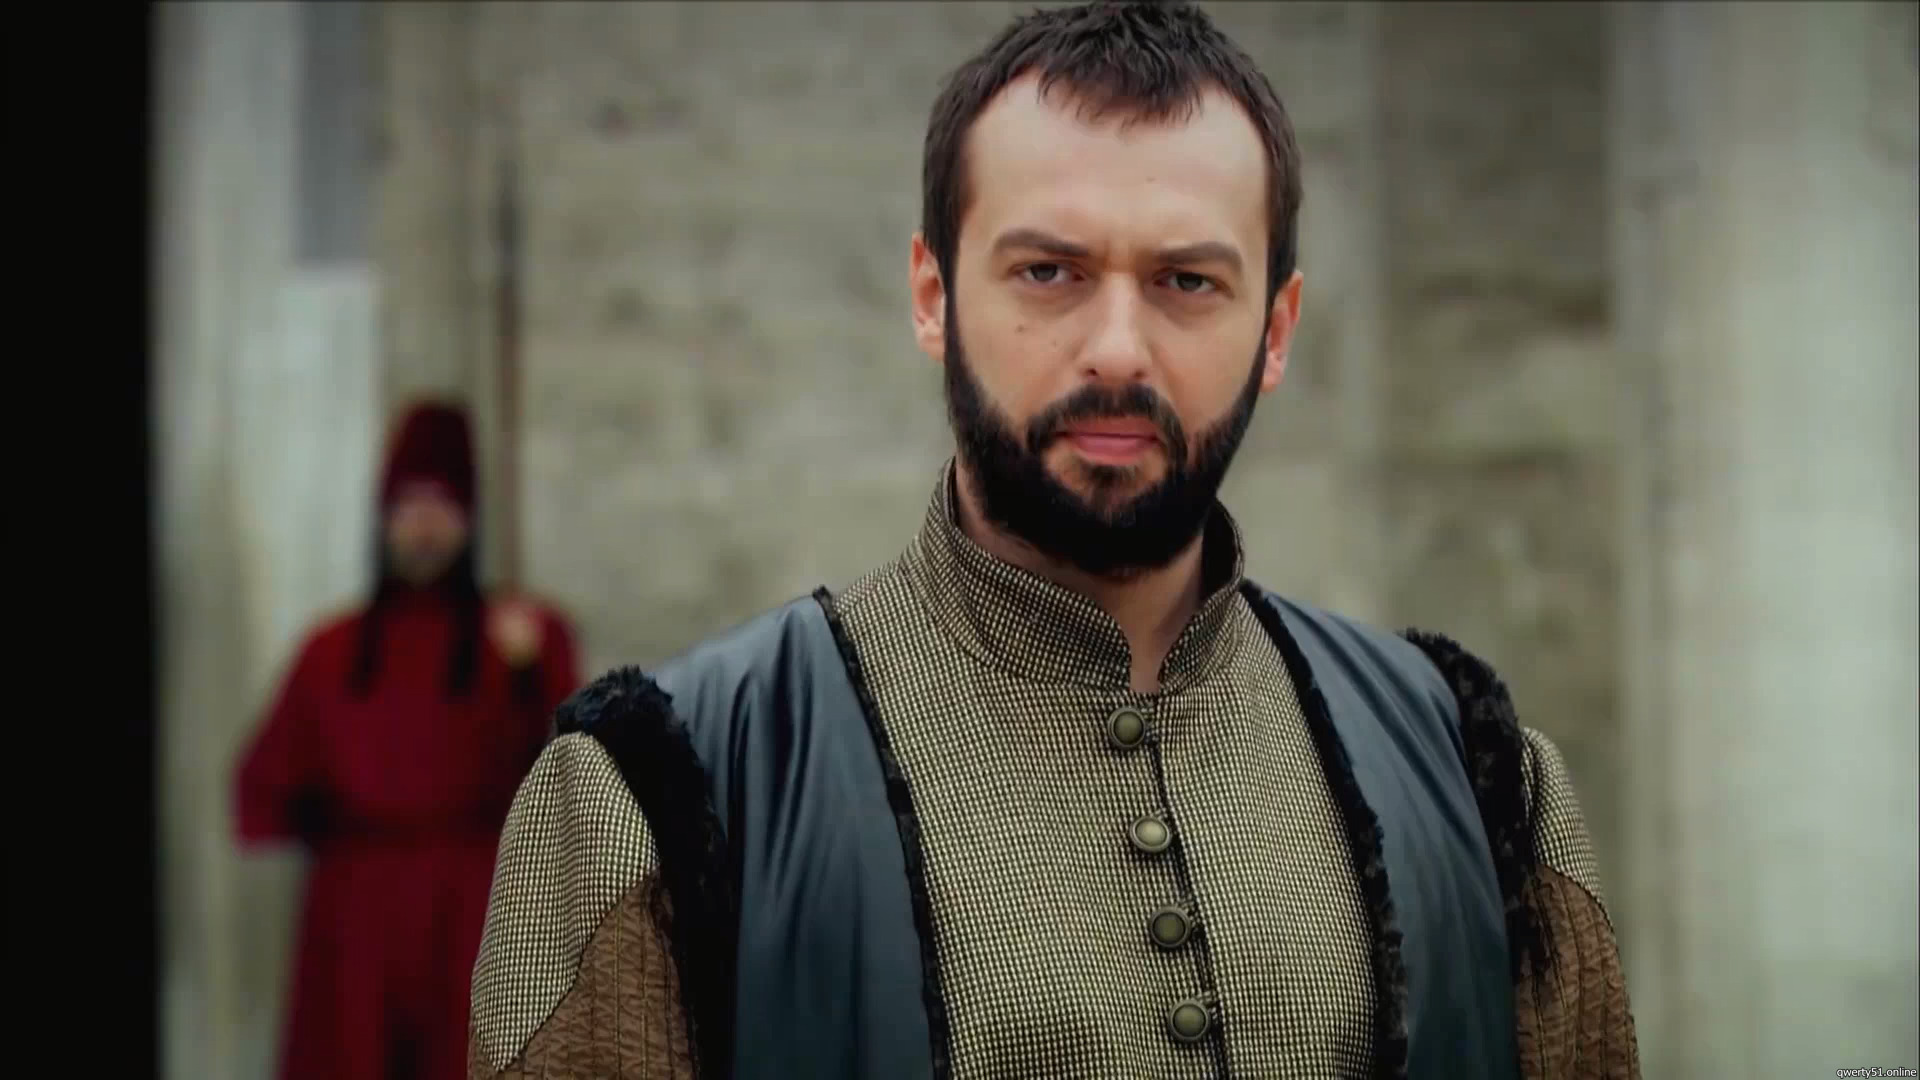 Ибрагим-паша из сериала «Великолепный век» имел все шансы стать султаном Османской империи